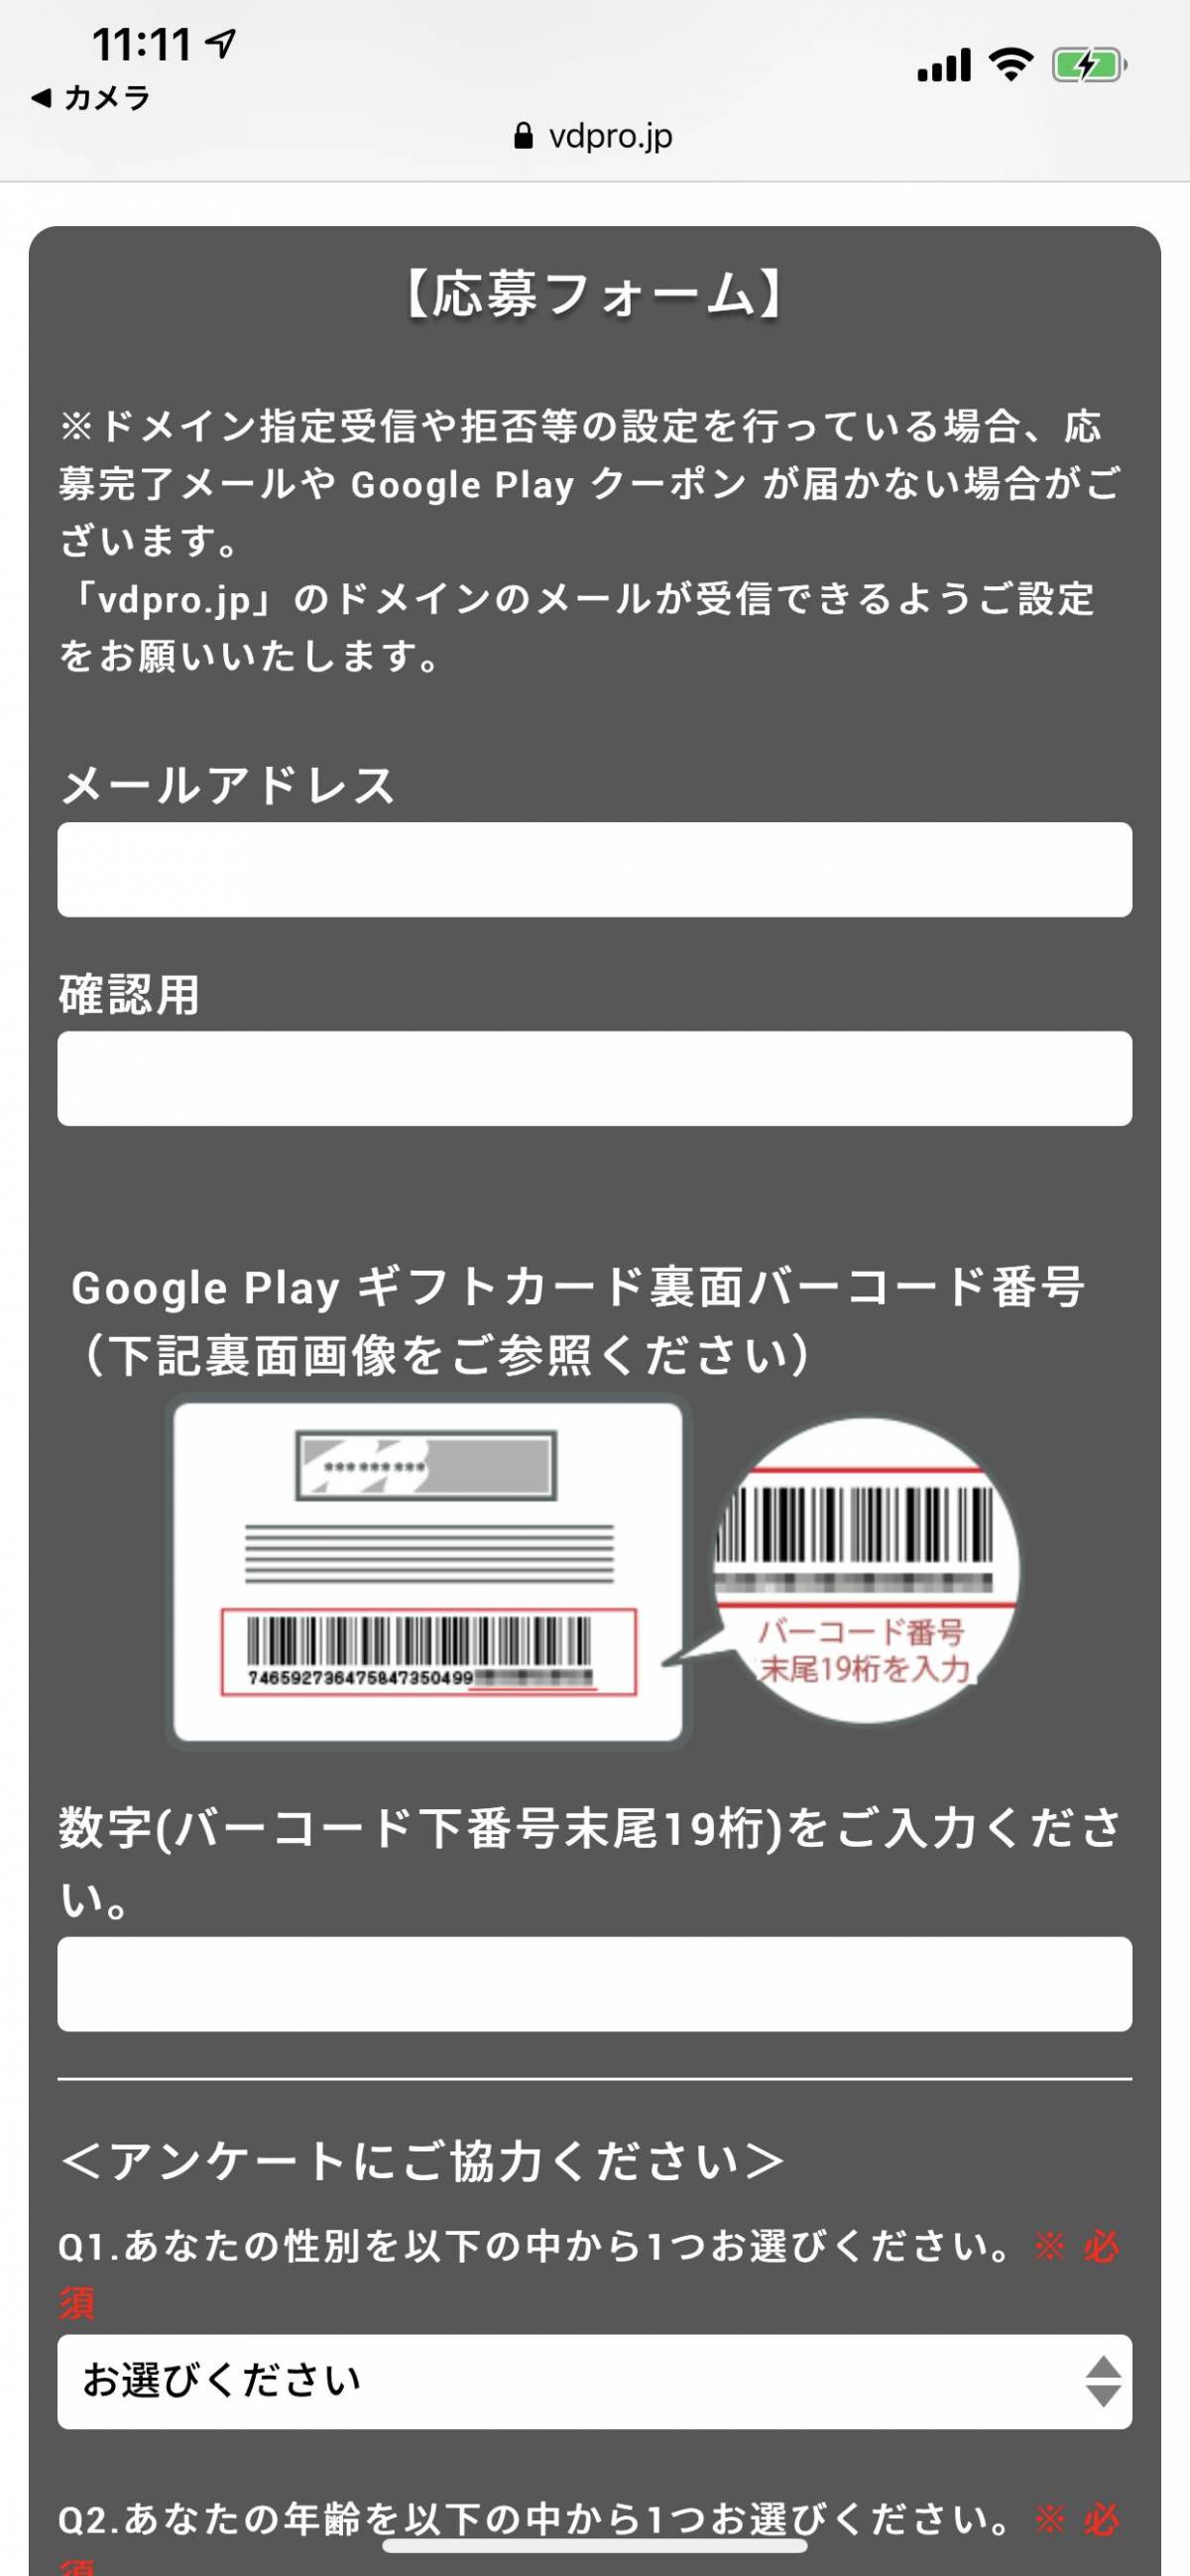 Google play カード キャンペーン